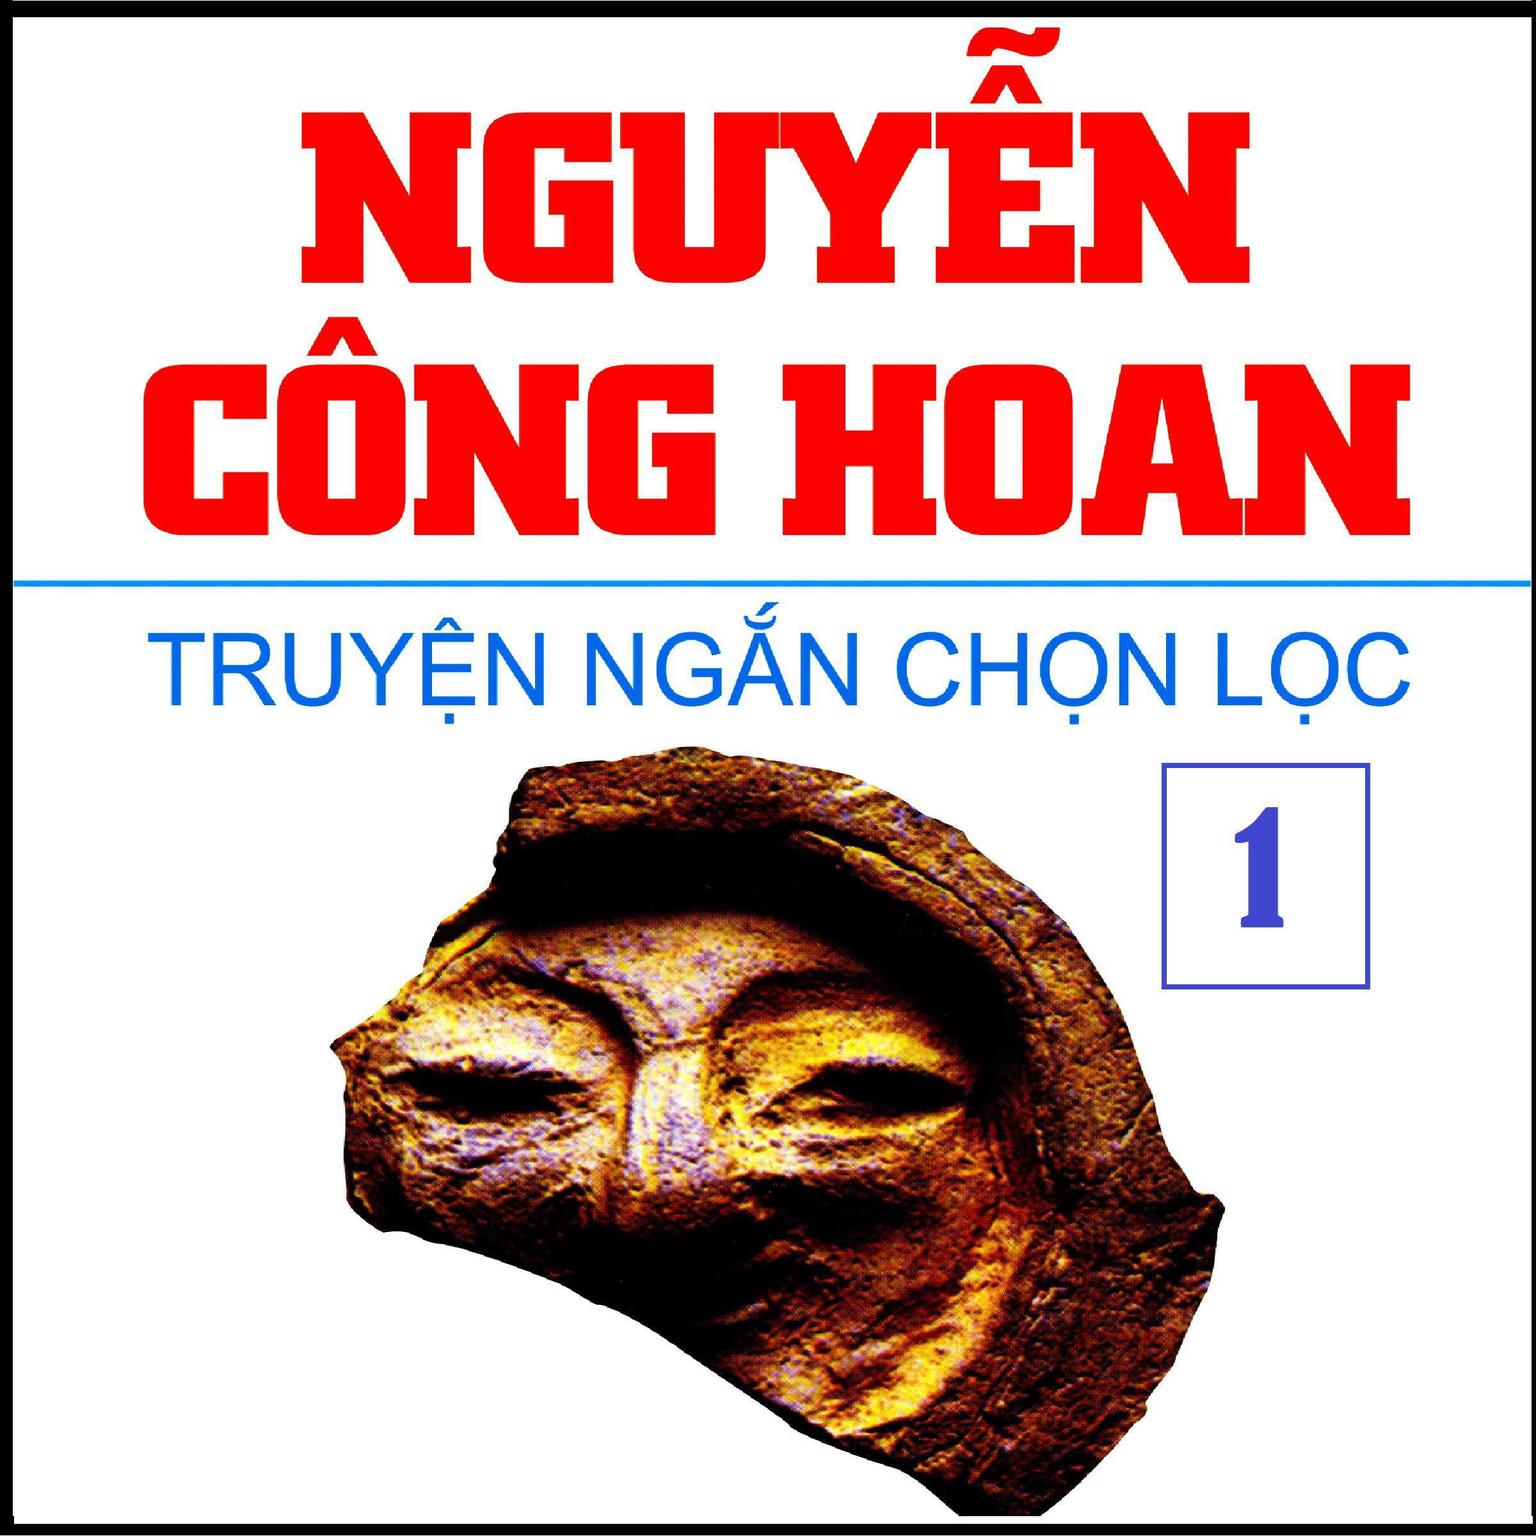 Truyen Ngan Nguyen Cong Hoan Audiobook, by Nguyen Cong Hoan